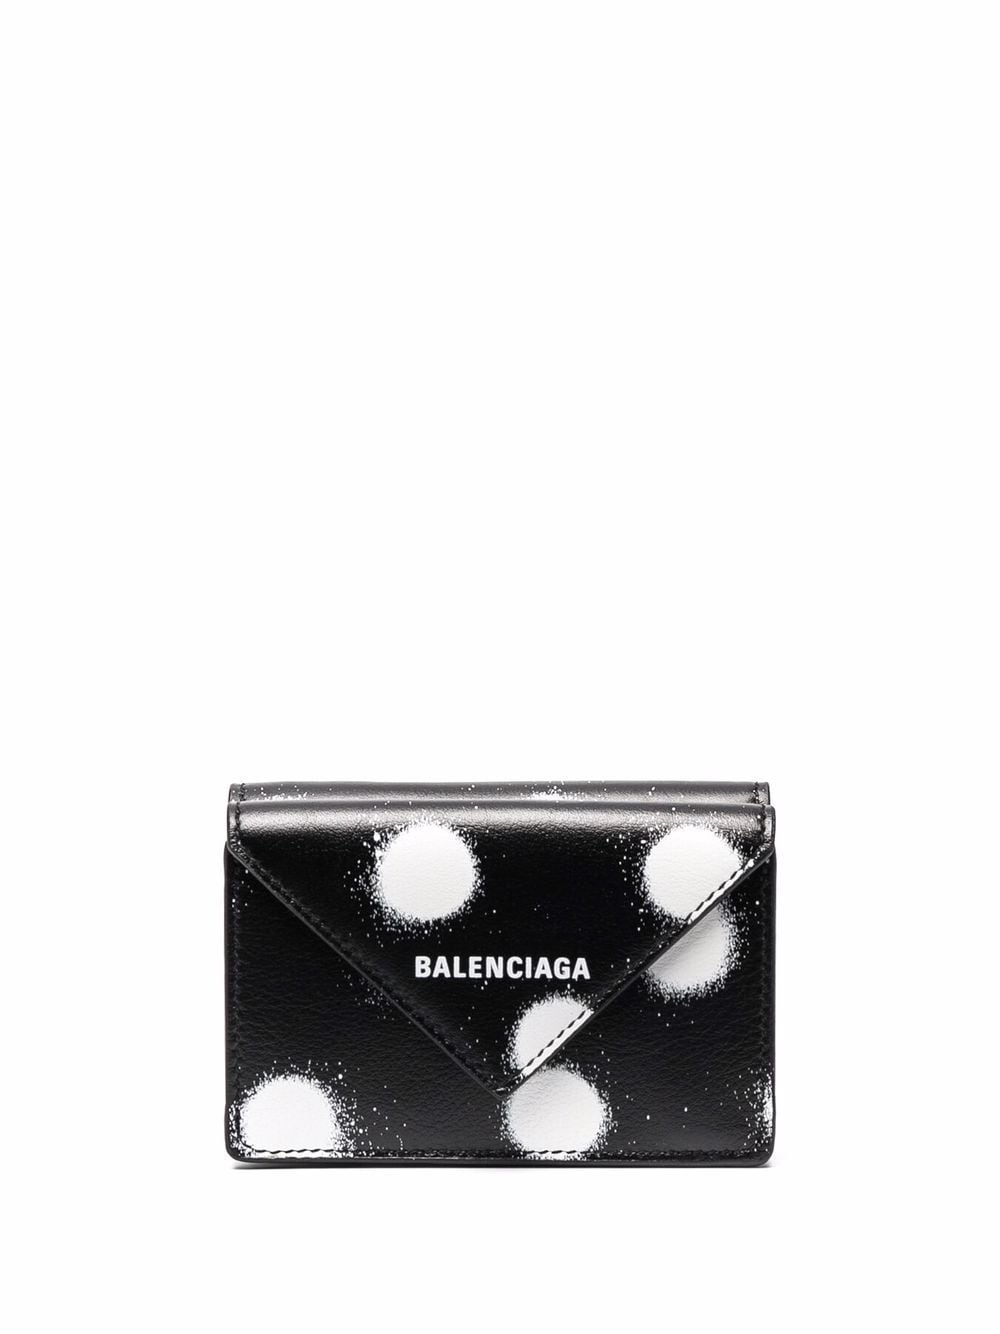 фото Balenciaga мини-кошелек papier